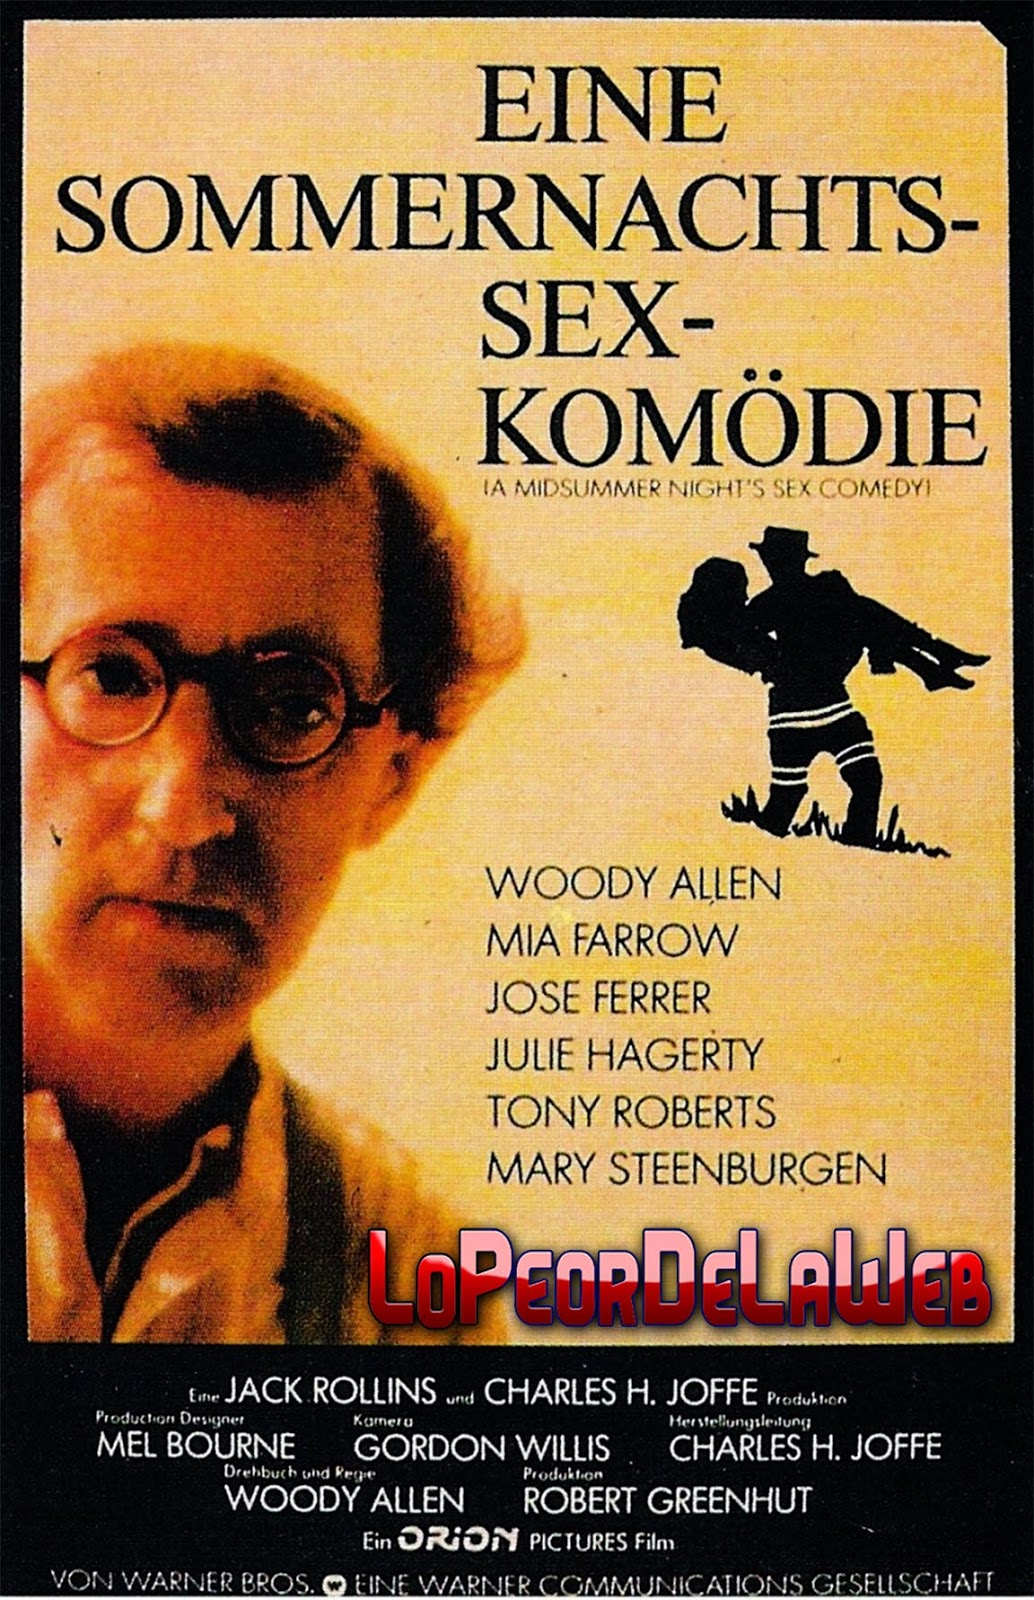 Comedia sexual en una noche de verano (1982 - Woody Allen)